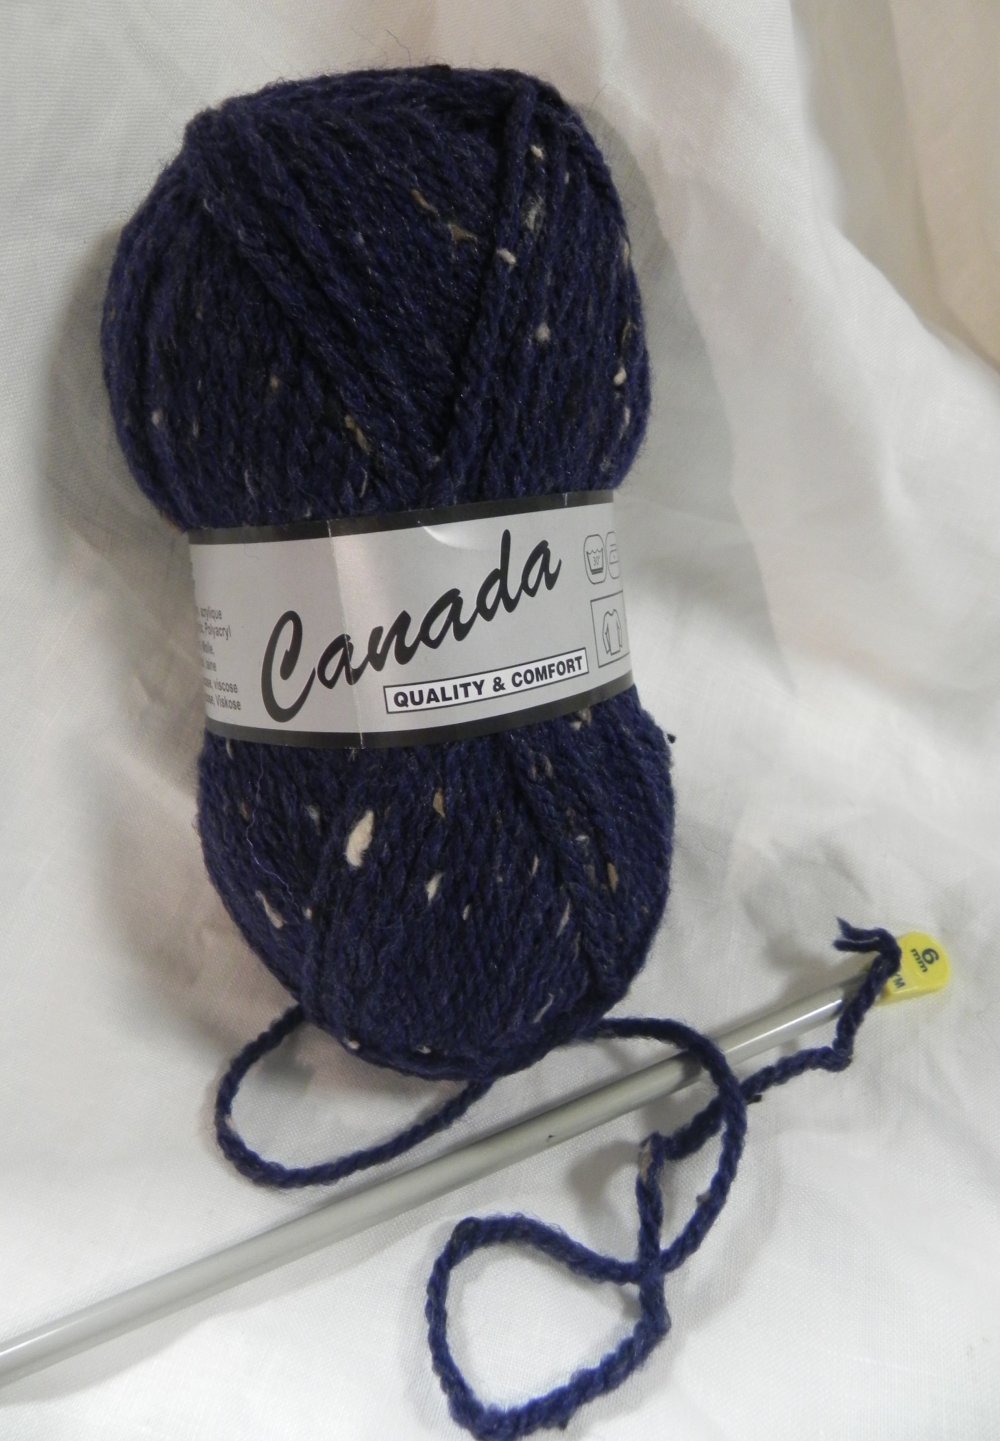 Layette Plus - Bleu marine 505 - Plassard - Pelote de fil à tricoter